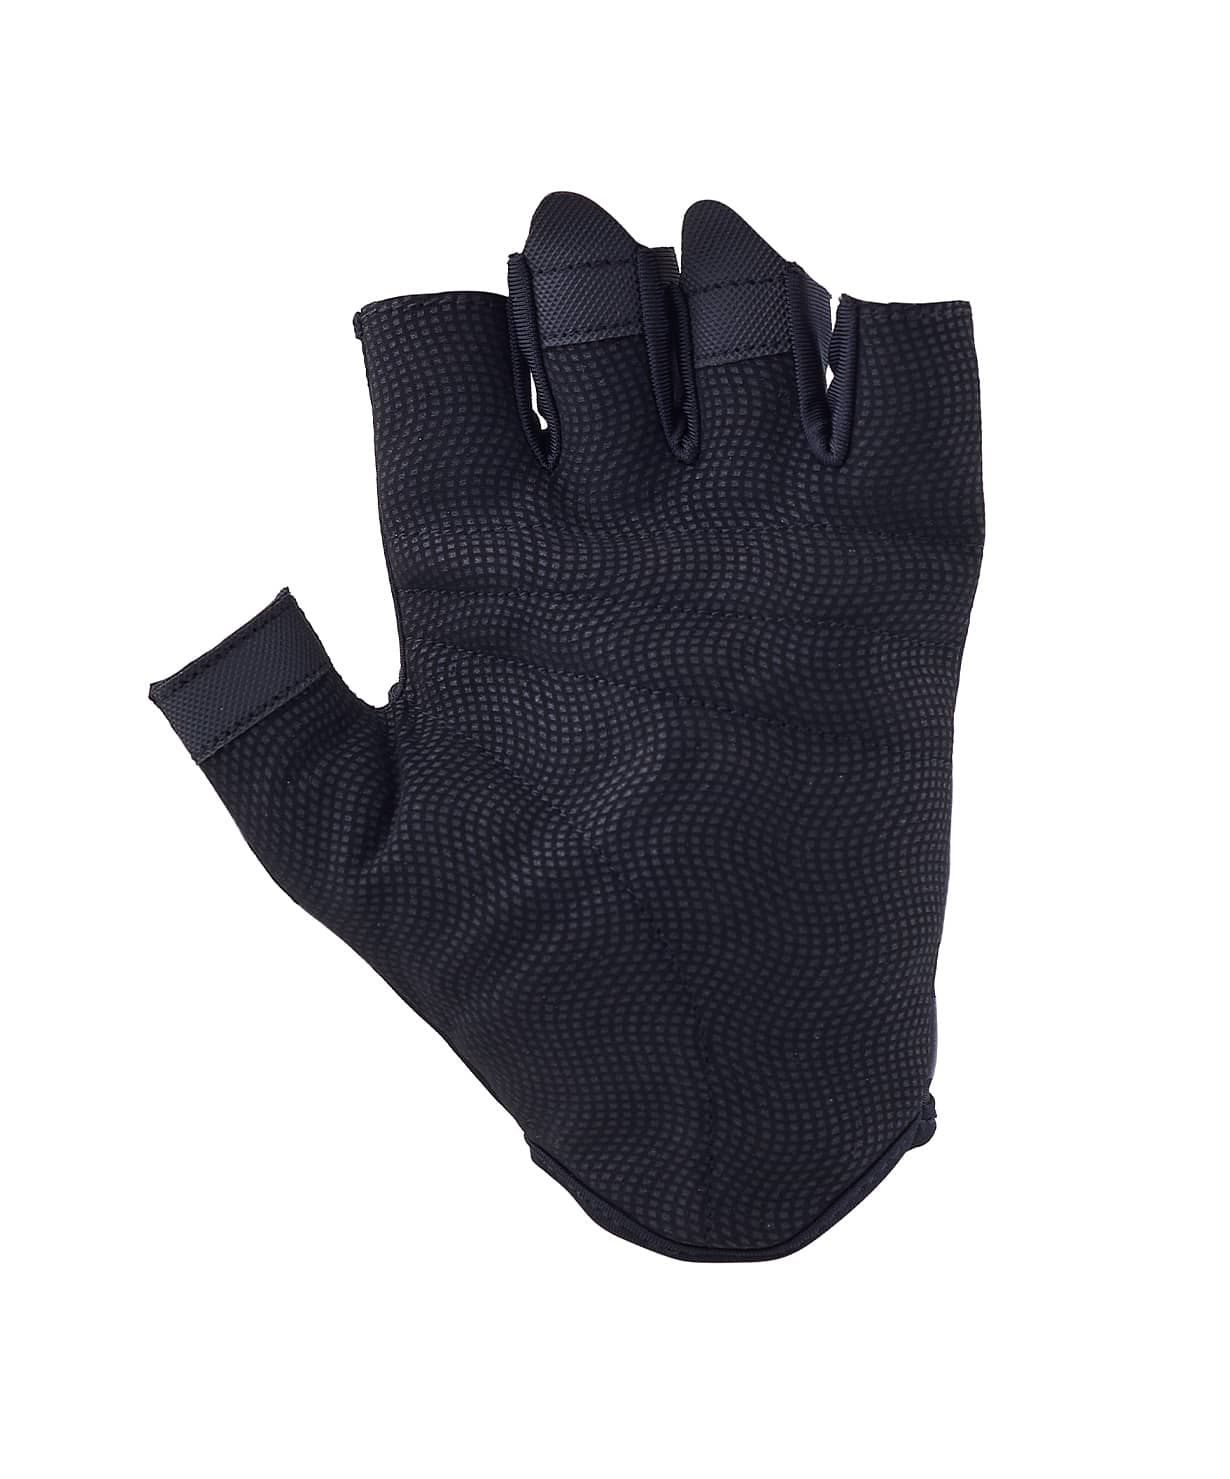 Перчатки для фитнеса Star Fit WG-102, черный/малиновый 1230_1479